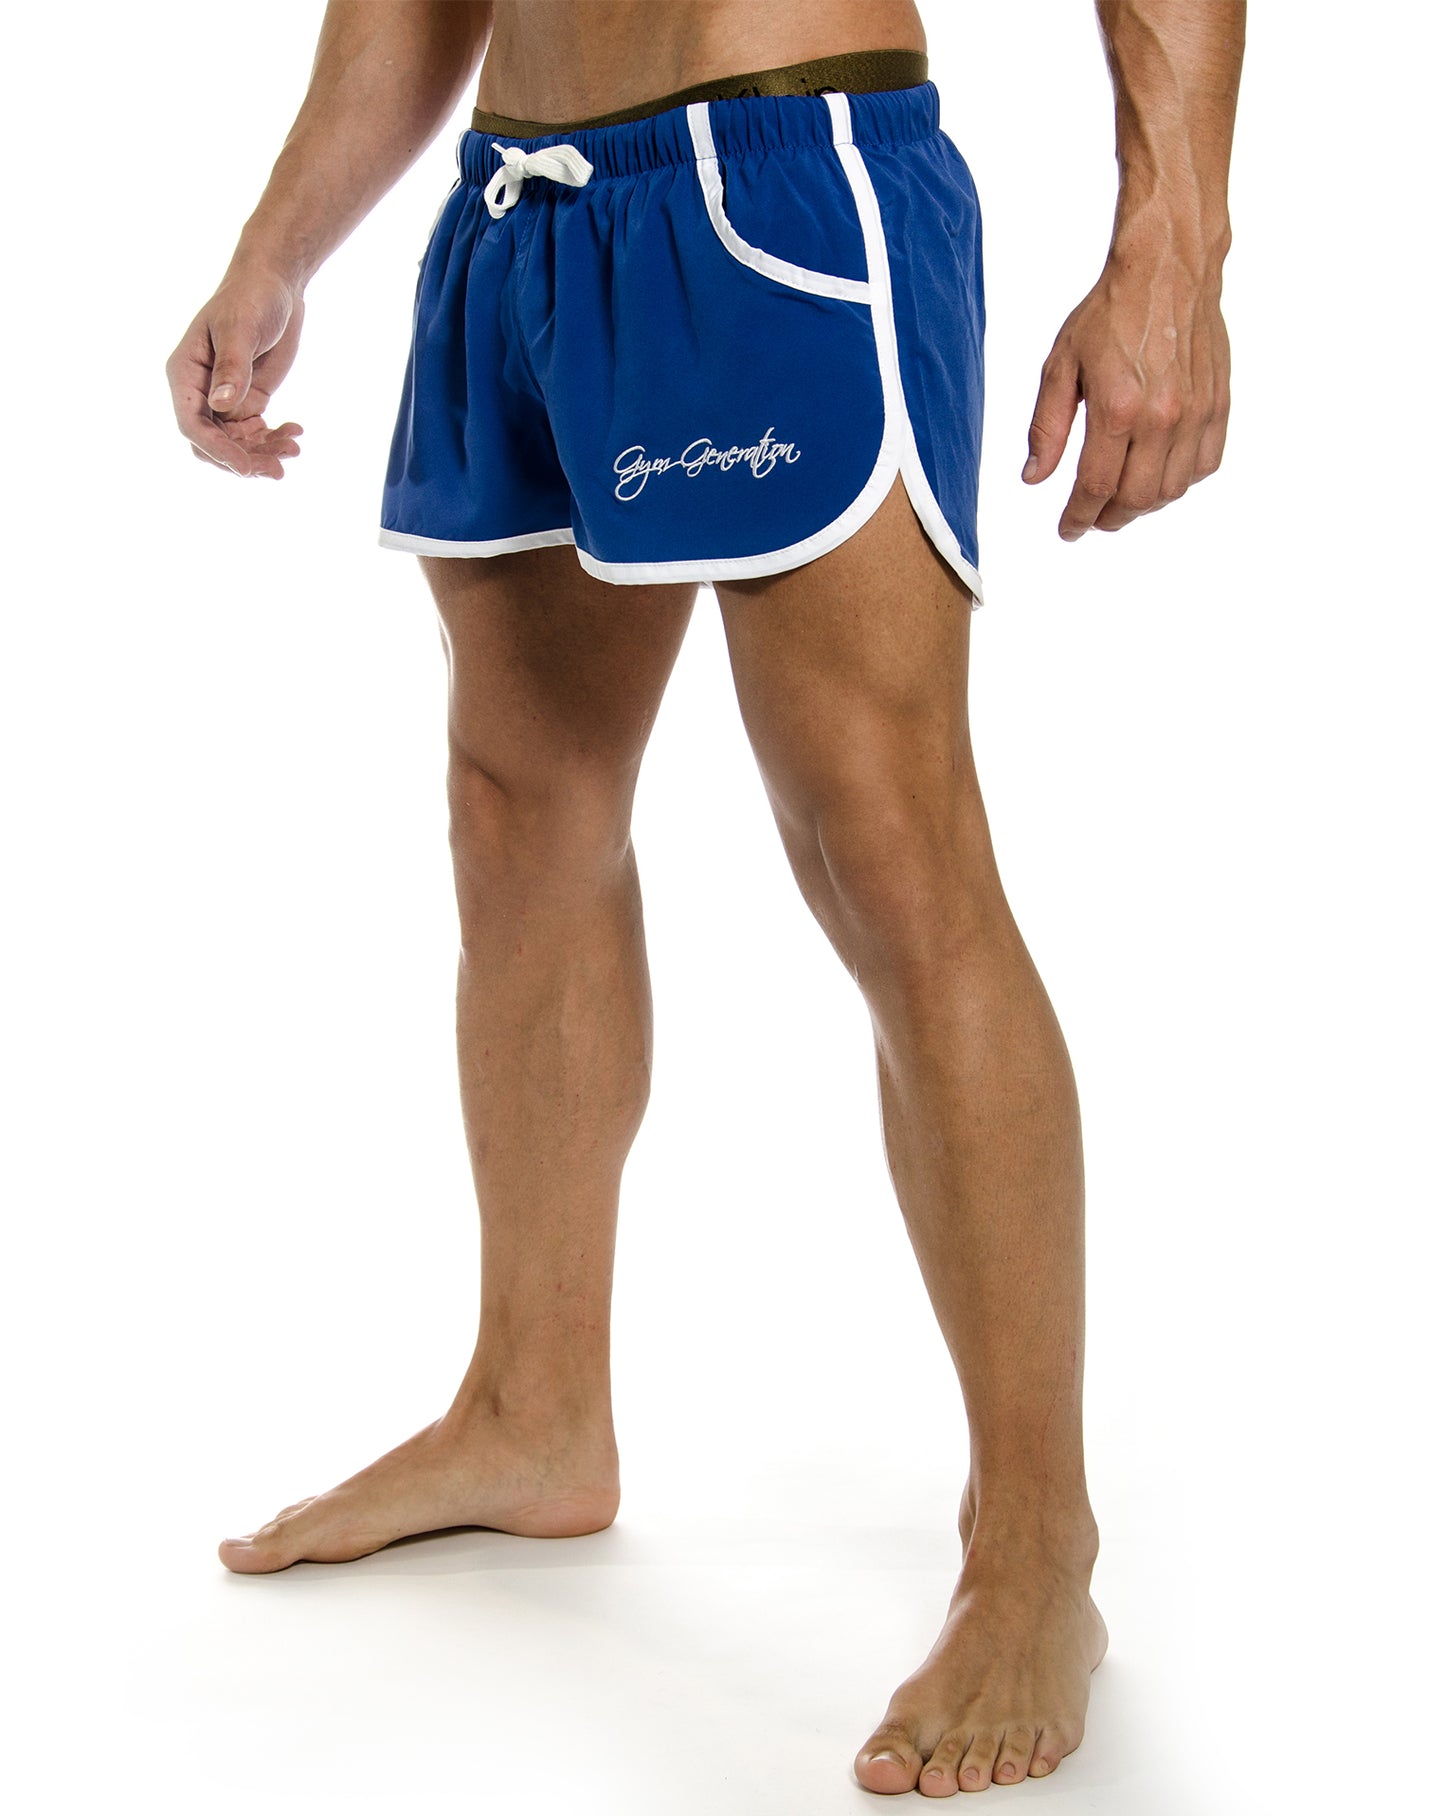 Leuchtend blaue Aesthetic Gym Shorts von Gym Generation, mit bequemem Innennetz und praktischen Taschen, für uneingeschränkte Bewegungsfreiheit.